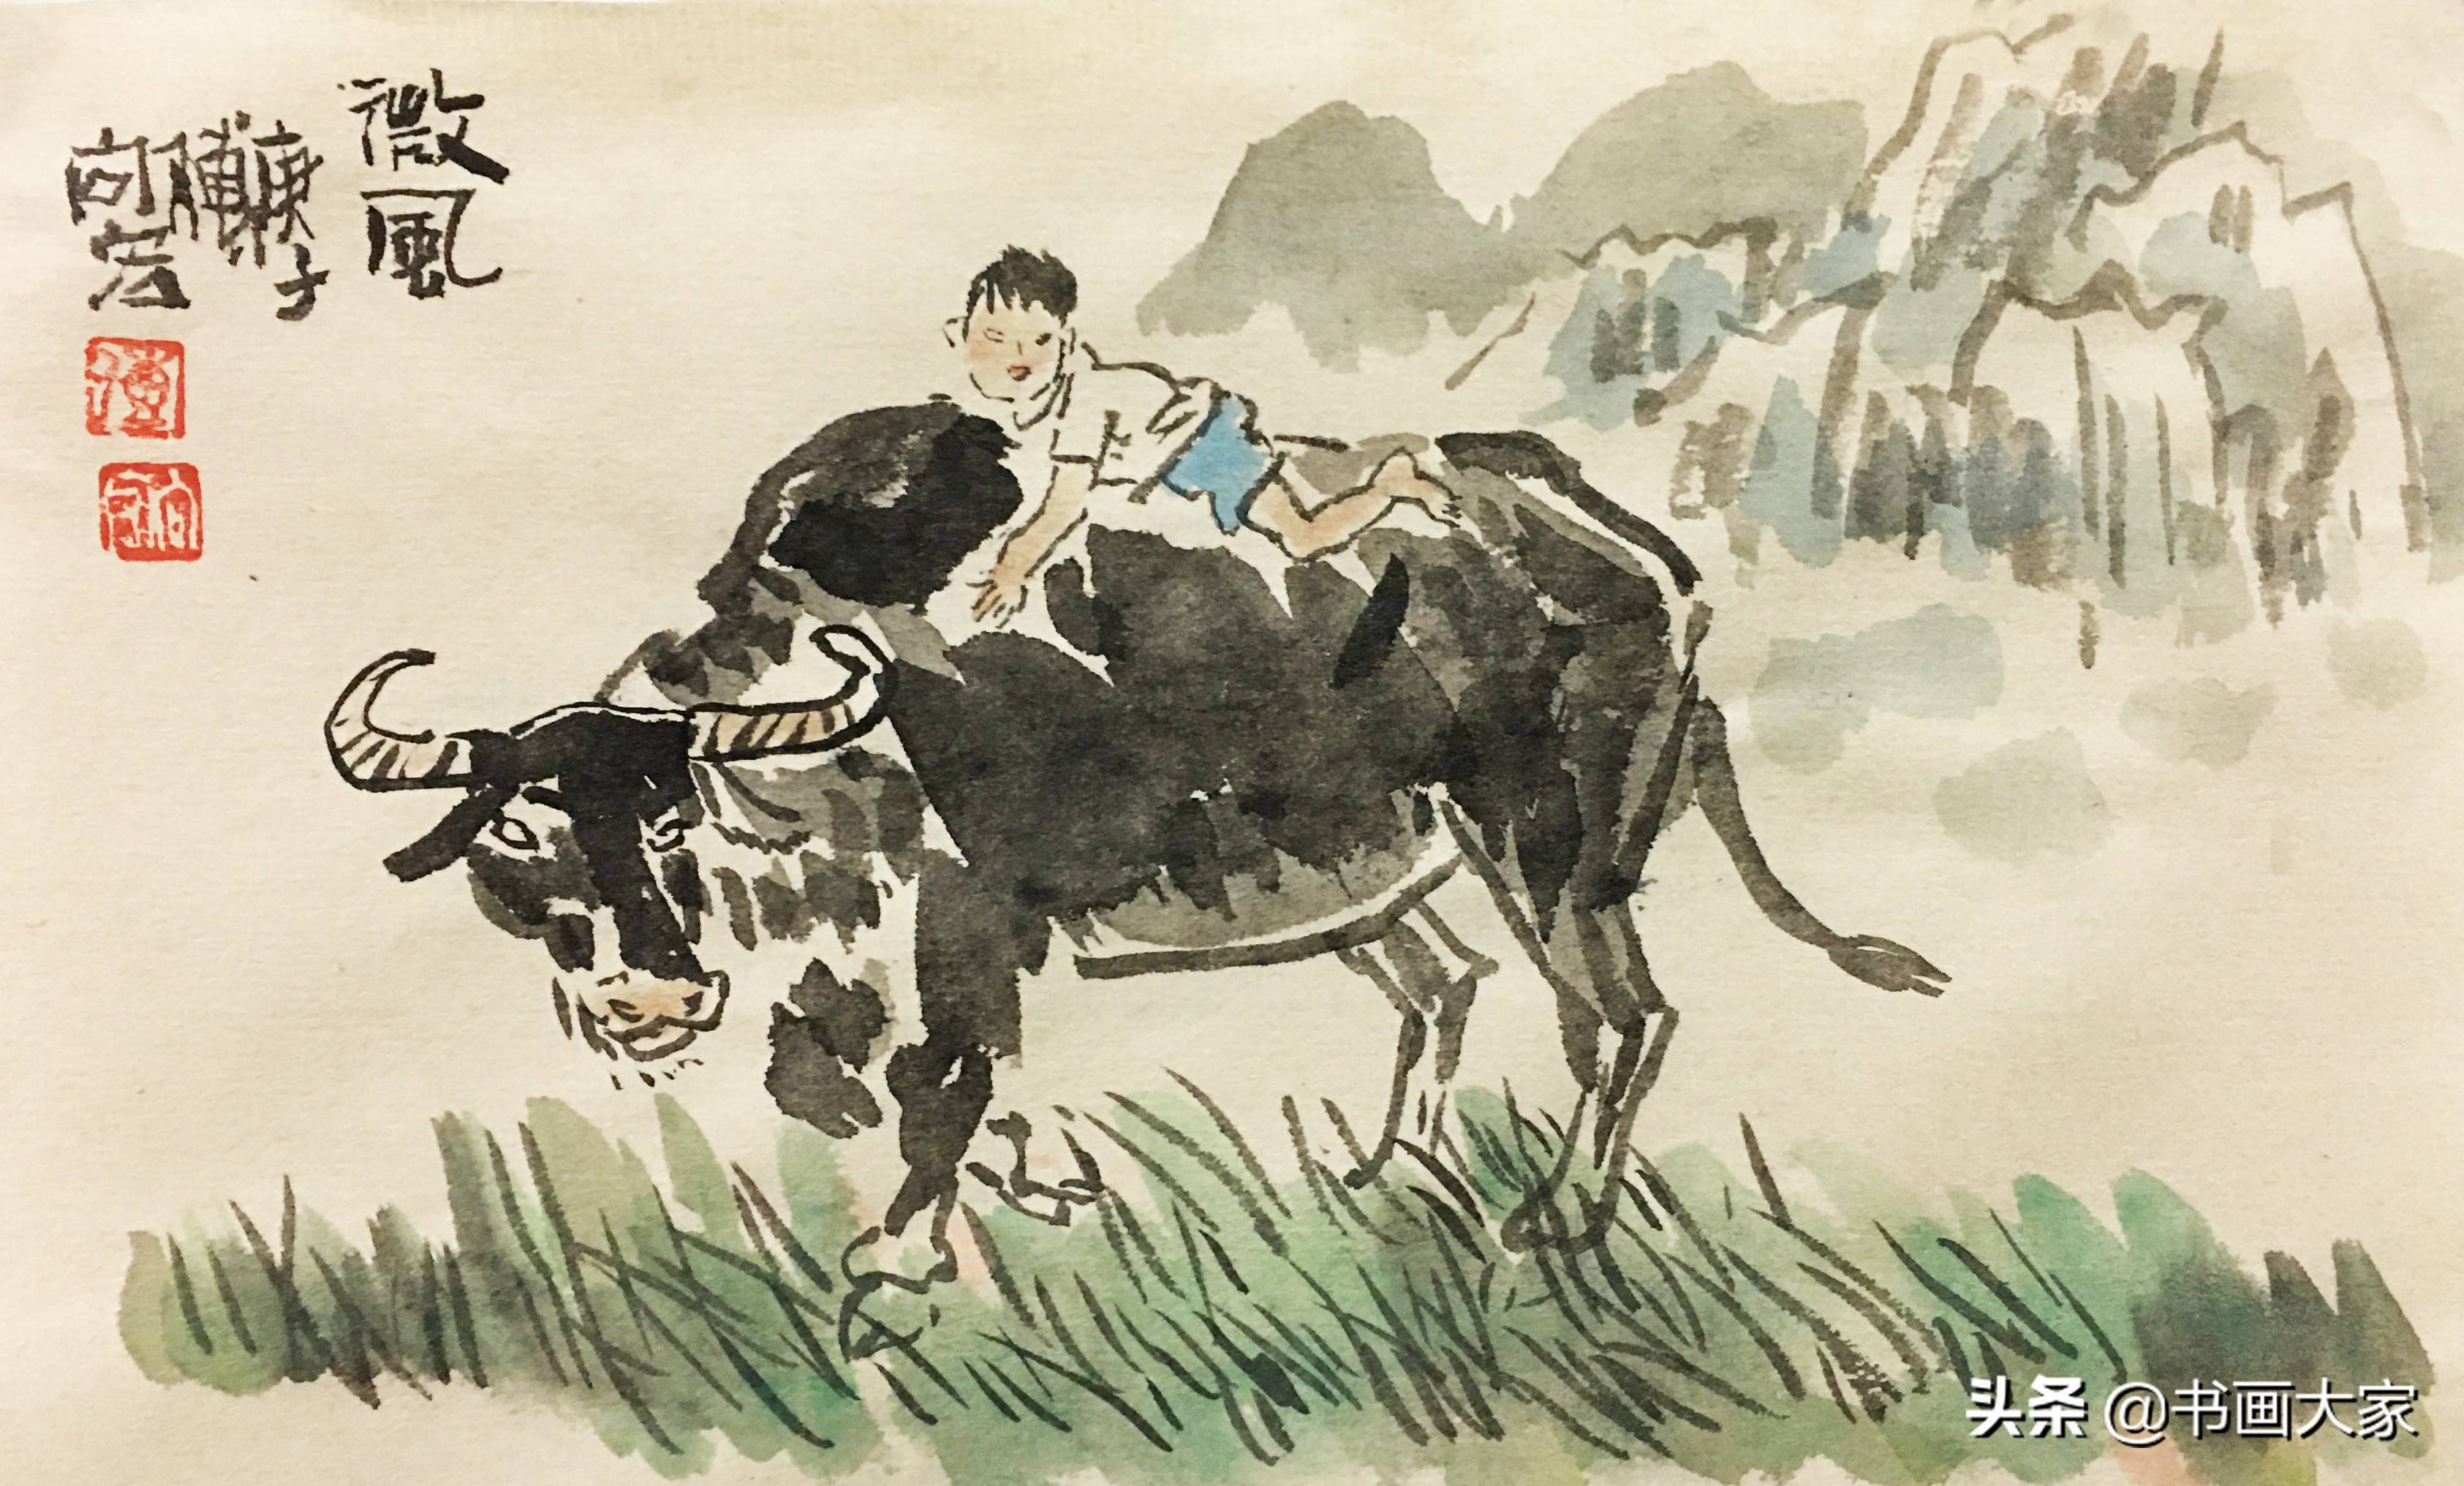 牛年画牛,诗一般的时刻,诗一般的场景